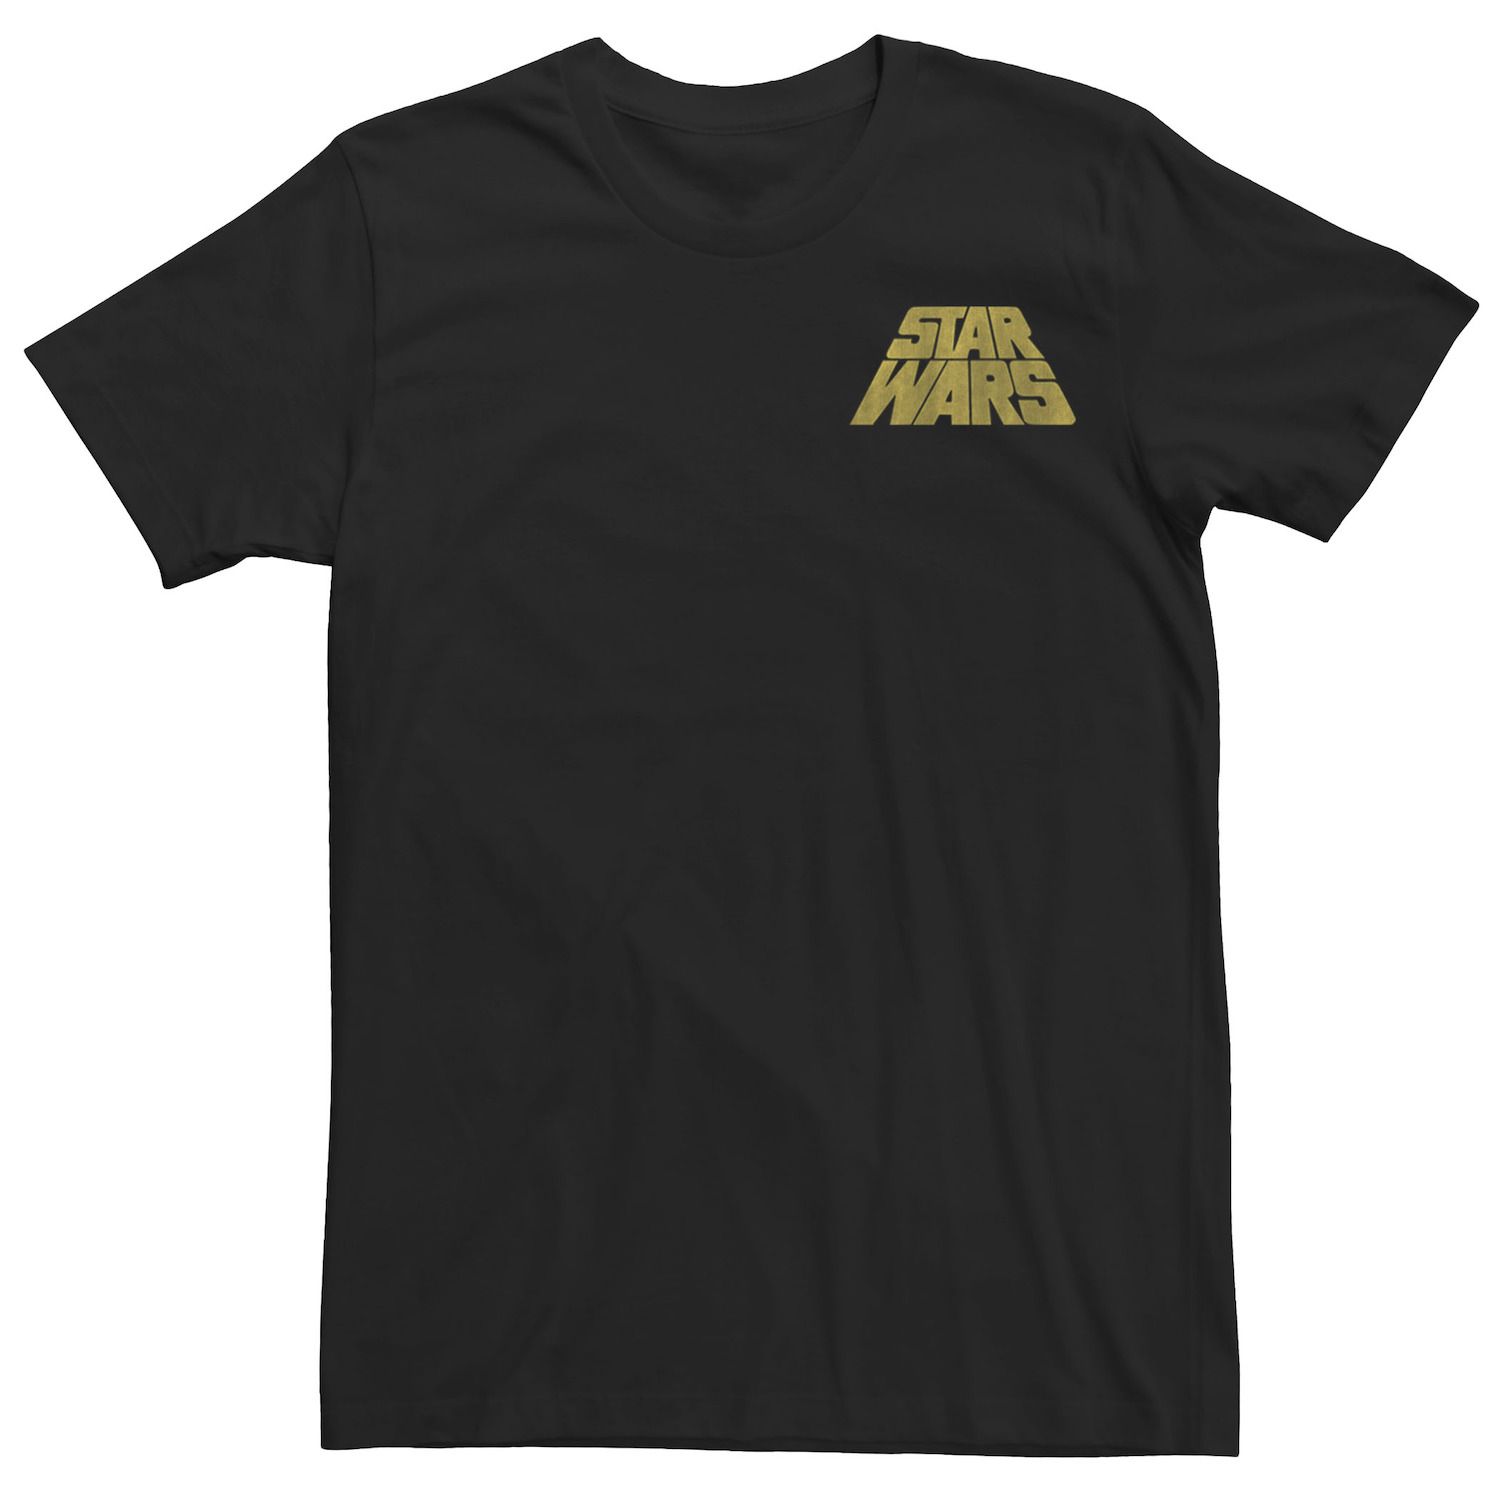 Мужская футболка с потертым наклонным логотипом Star Wars